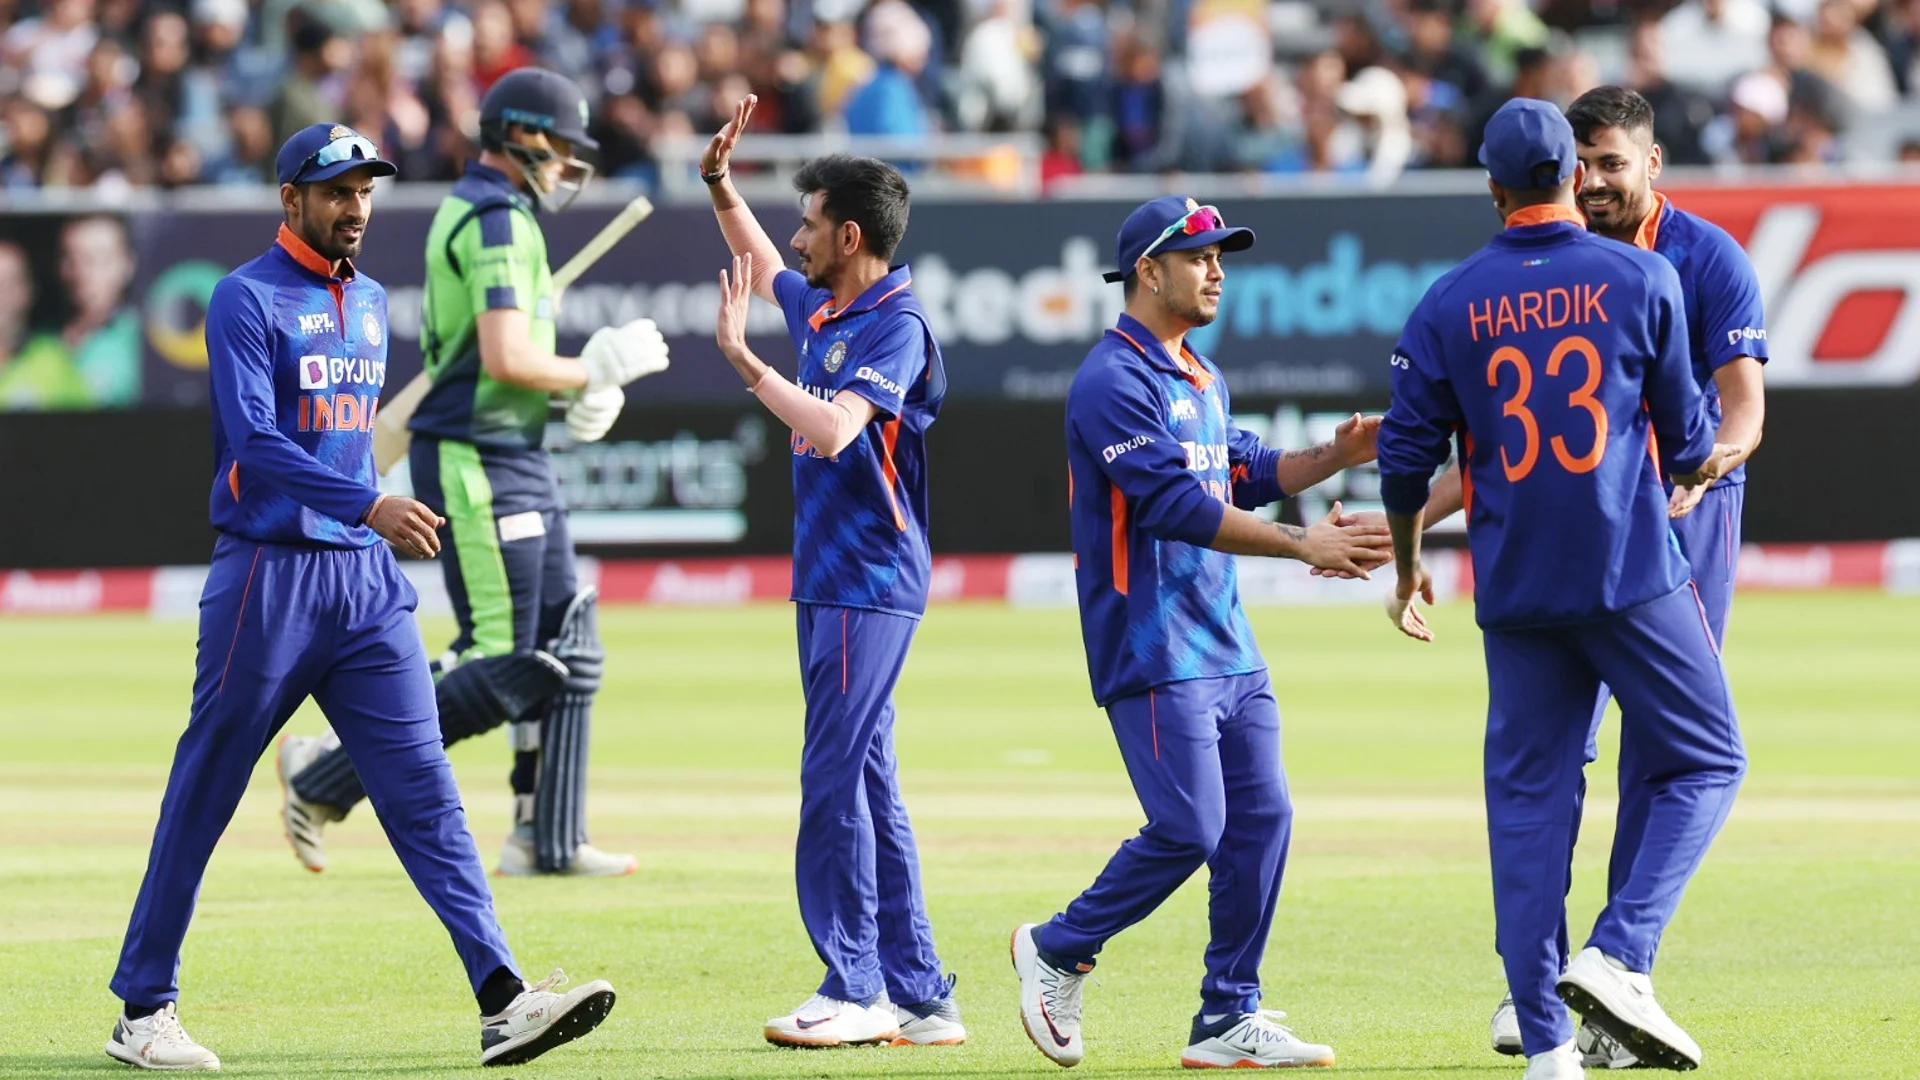 भारतीय टीम ने आयरलैंड को पहले टी-20 में 7 विकेट से रौंदा, हार्दिक पांड्या और दीपक हूडा का दमदार प्रदर्शन